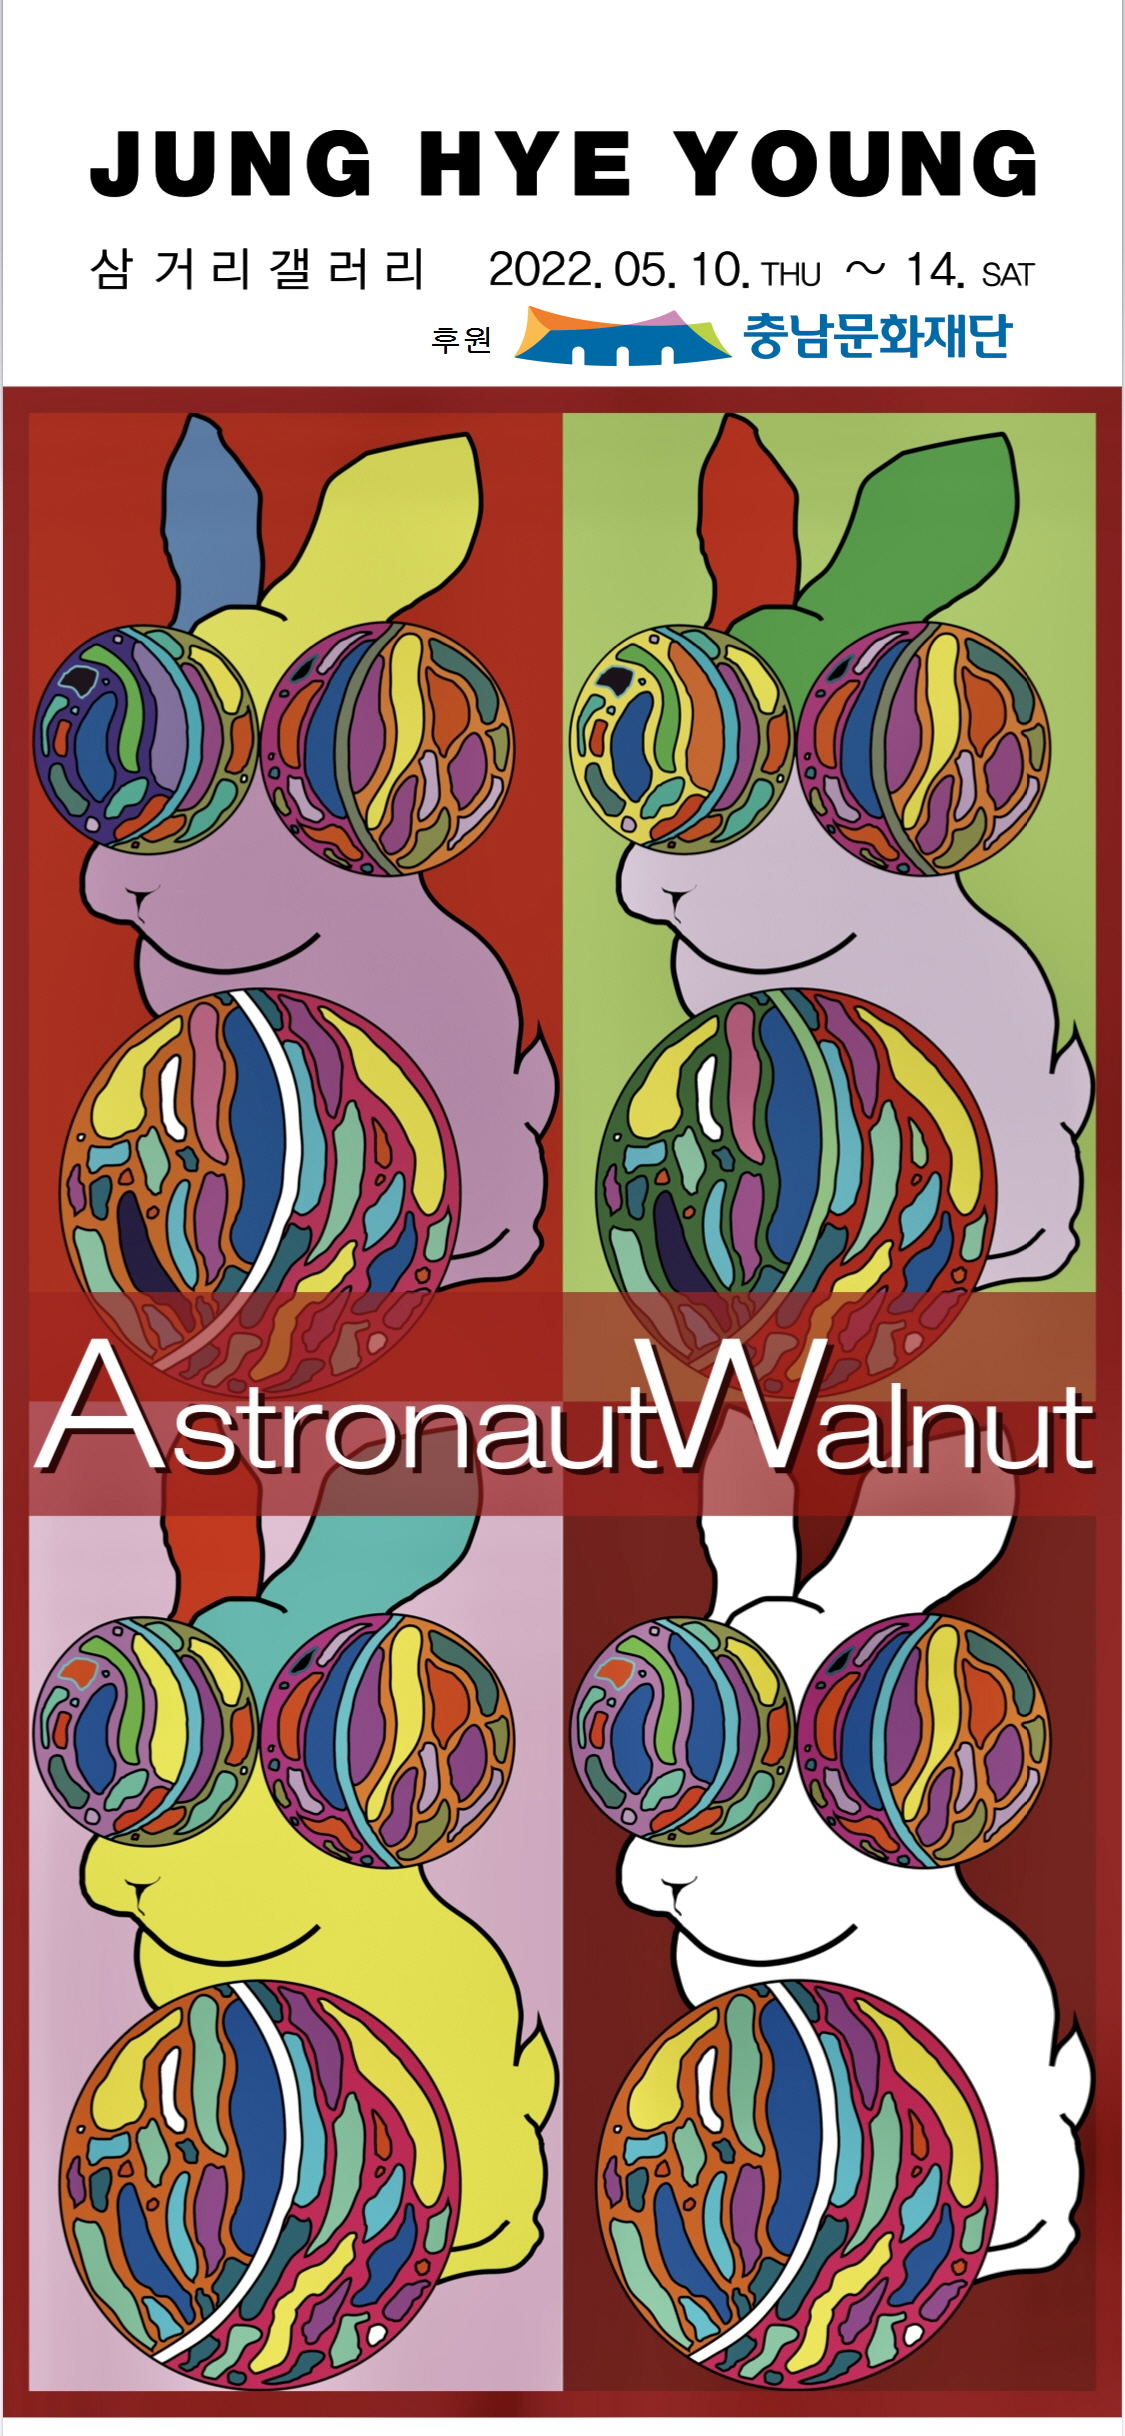 Astronaut Walnut